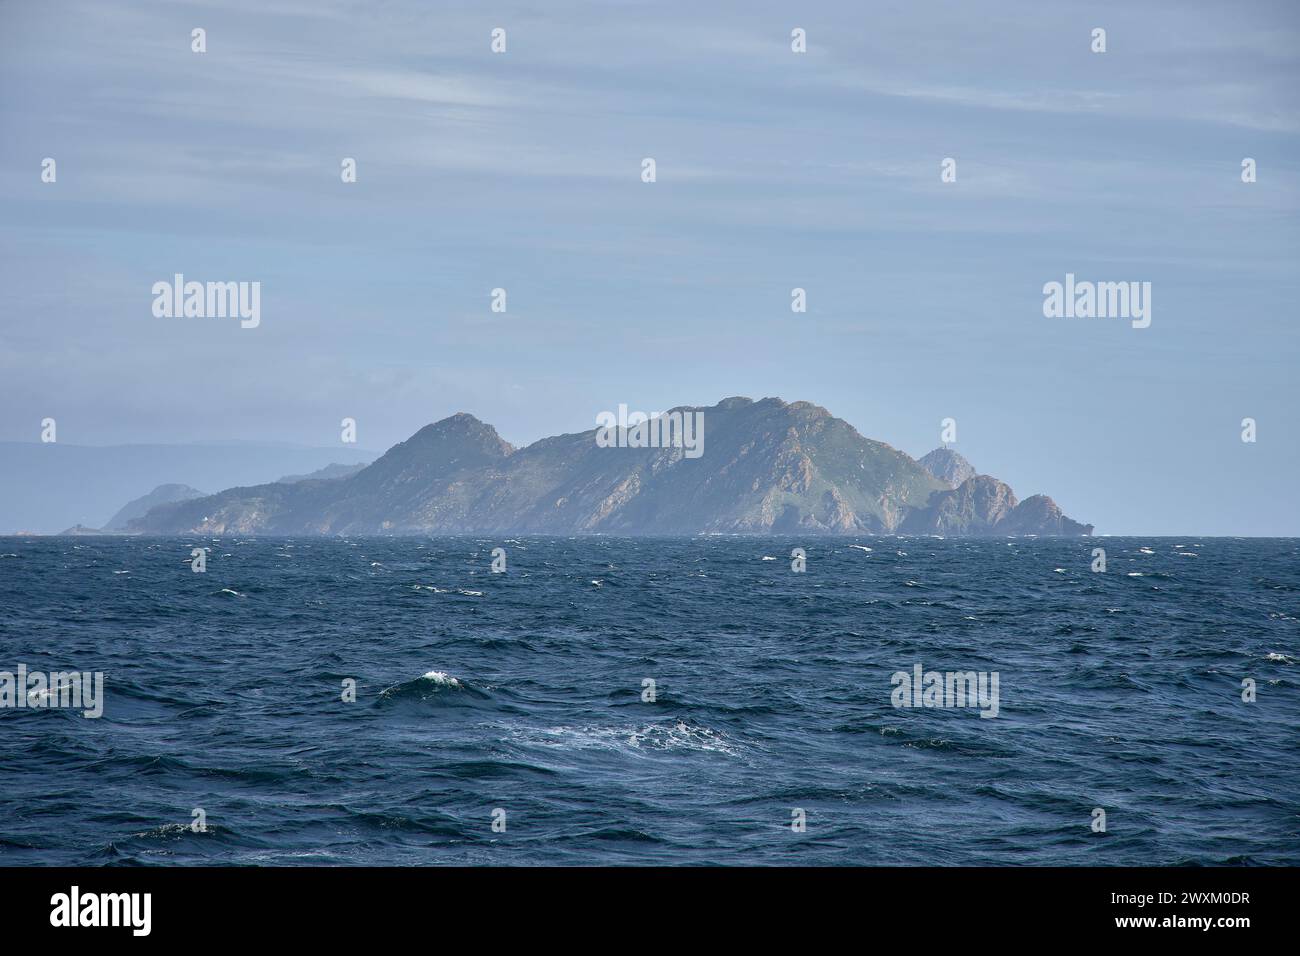 Rocce dell'isola di Monteagudo. l'arcipelago delle isole cities al largo della costa di pontevedra in galizia, spagna, alla foce della ria de vigo. visualizza Foto Stock